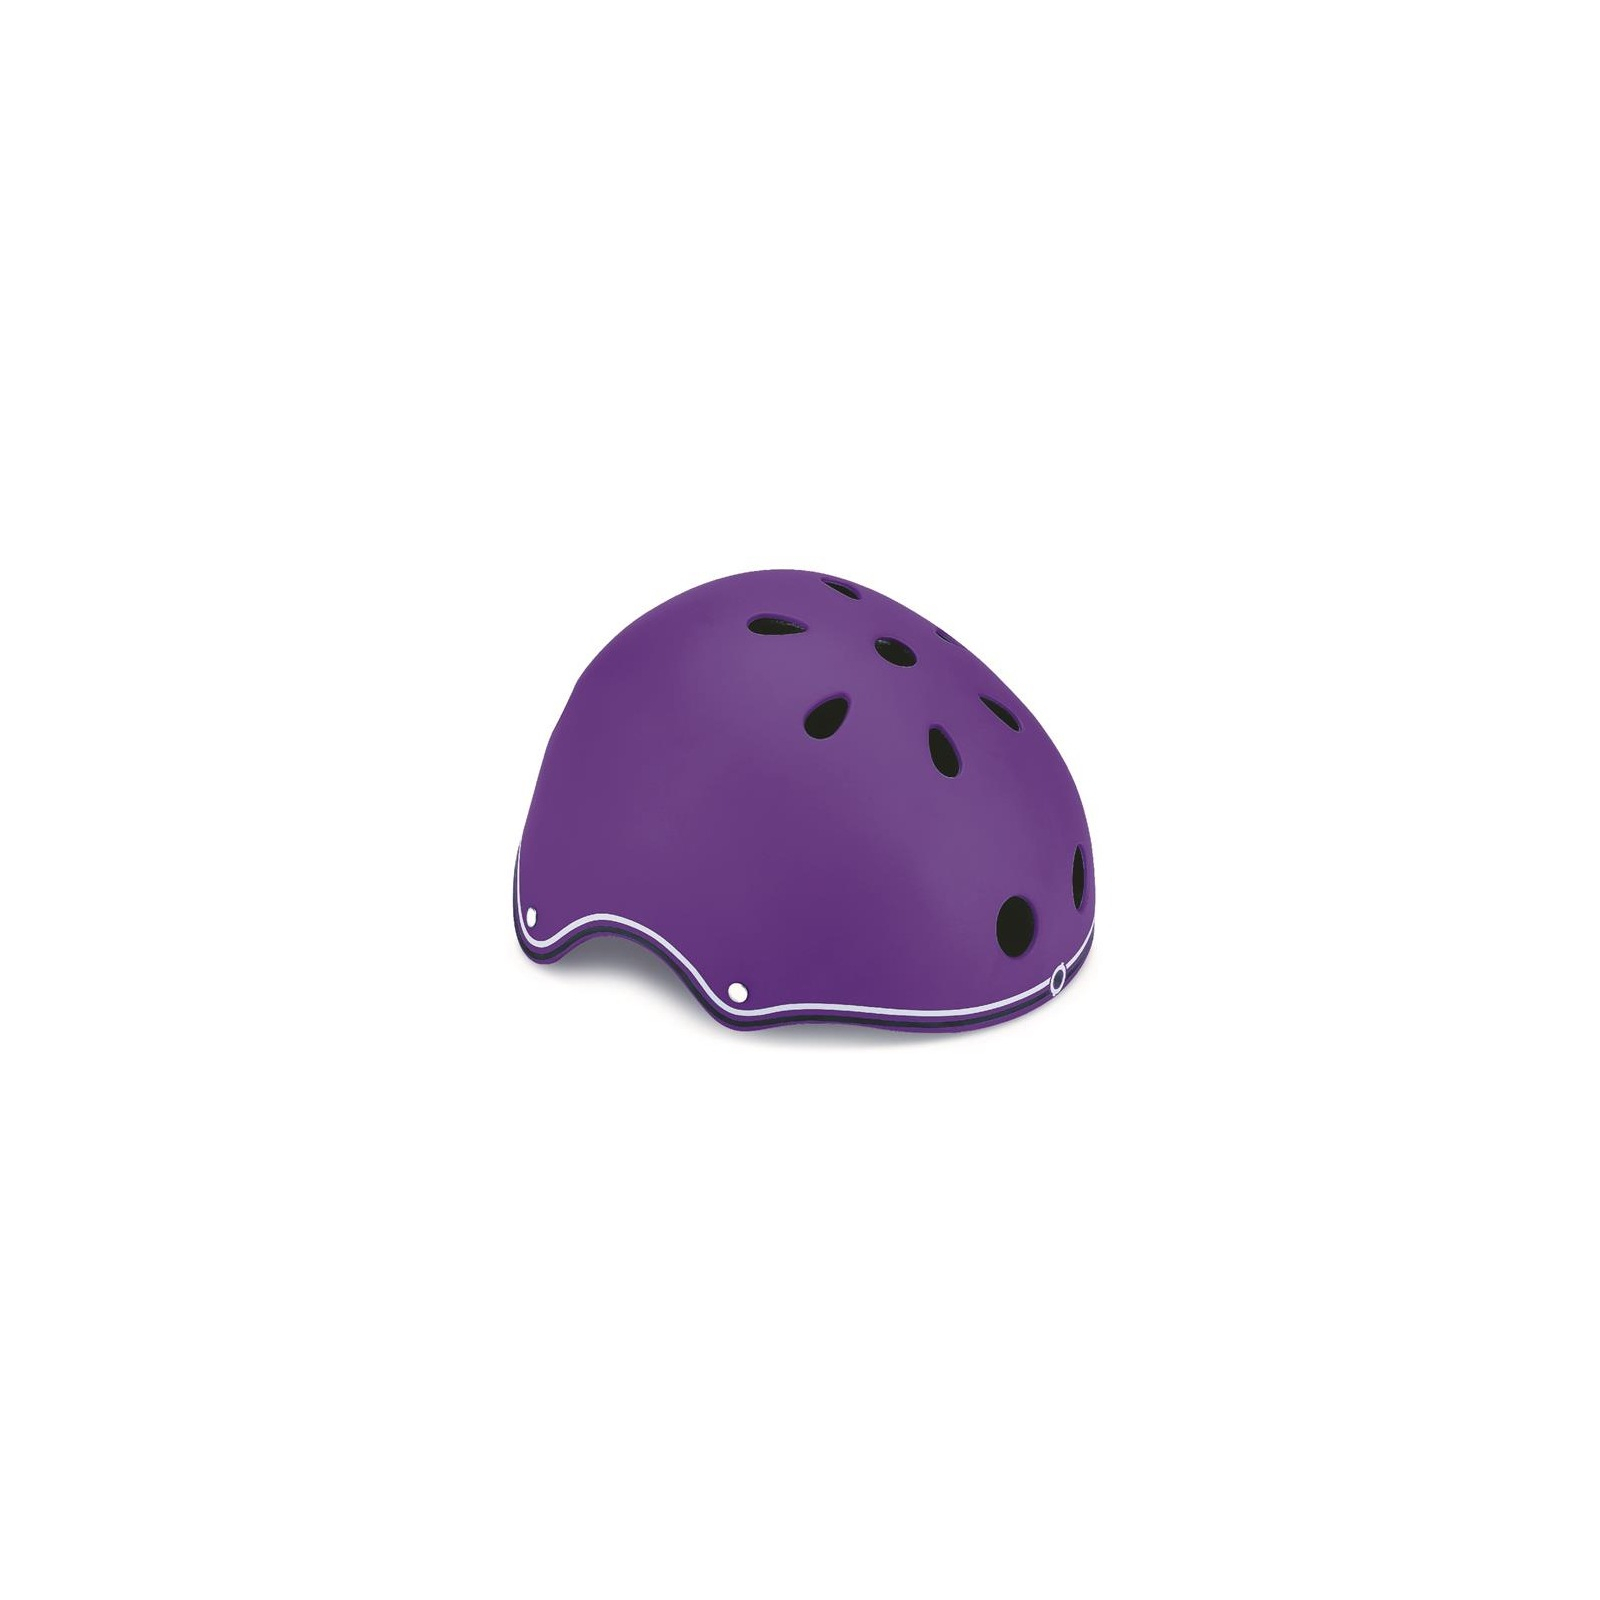 Шлем Globber защитный Красный 51-54см (XS) (500-102) изображение 3